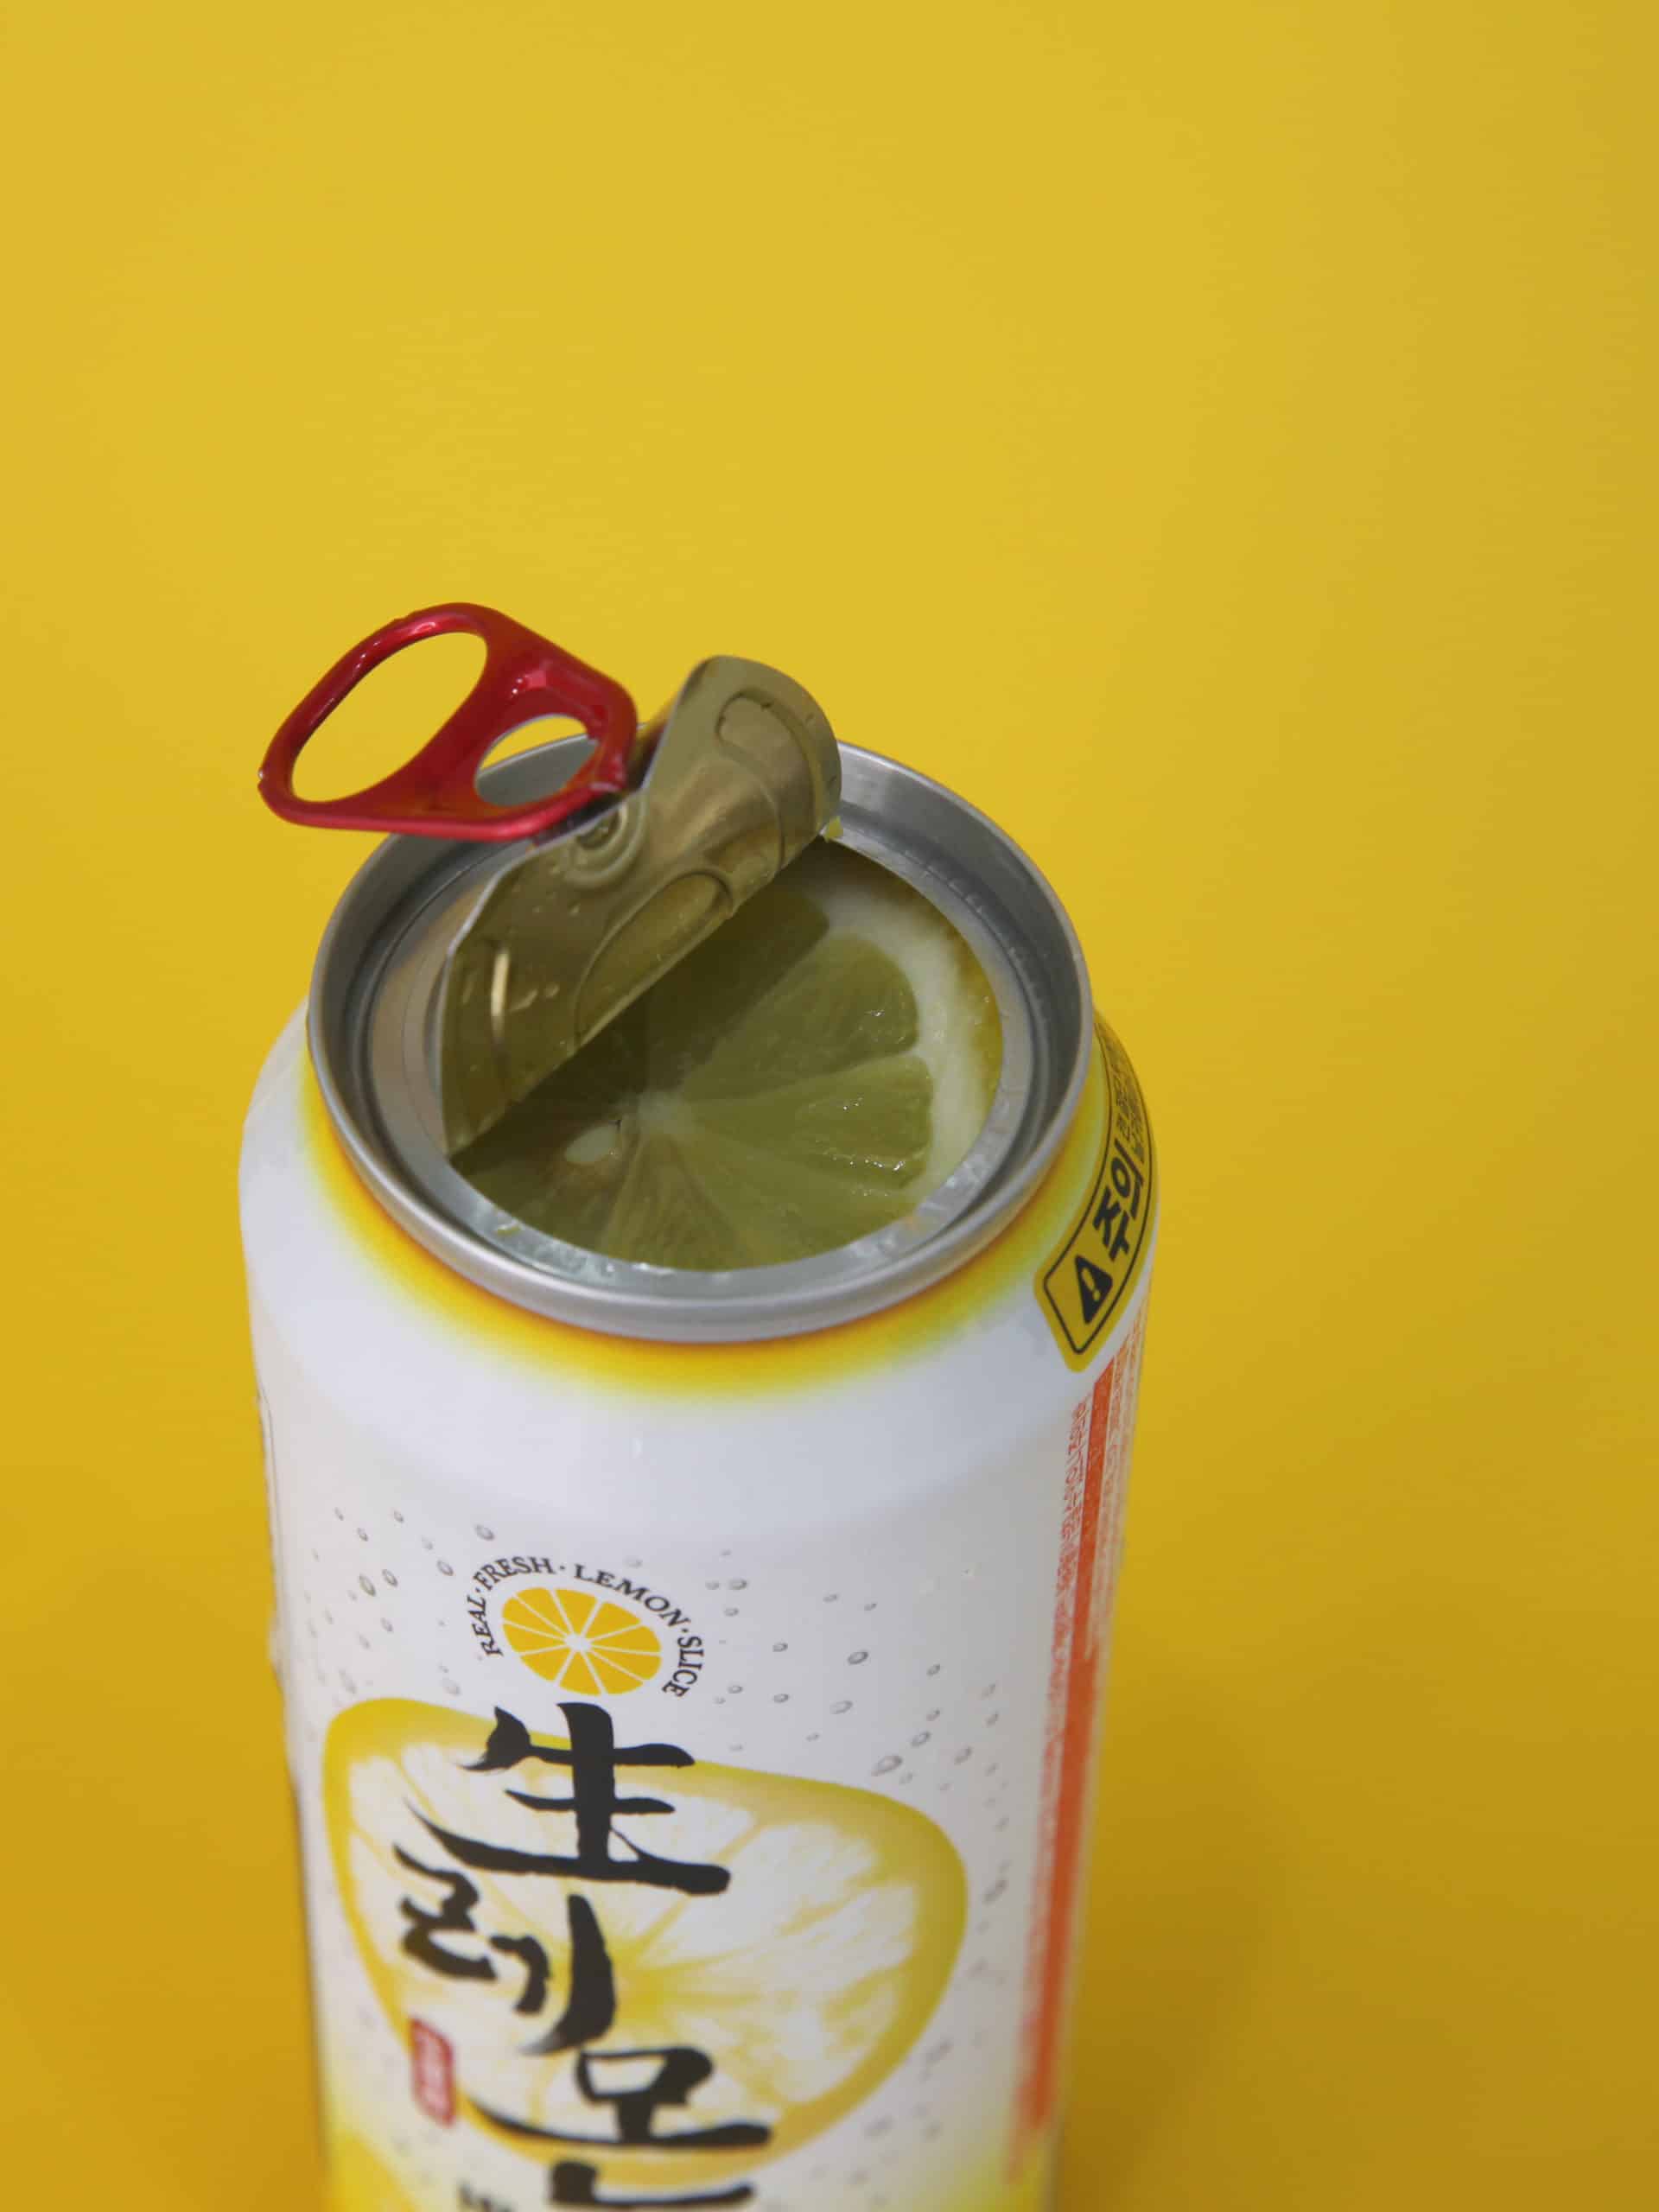 韓國食品-[CU Brewguru] 新鮮檸檬高球highball雞尾酒 (ABV 8.3%酒精含量) 500ml